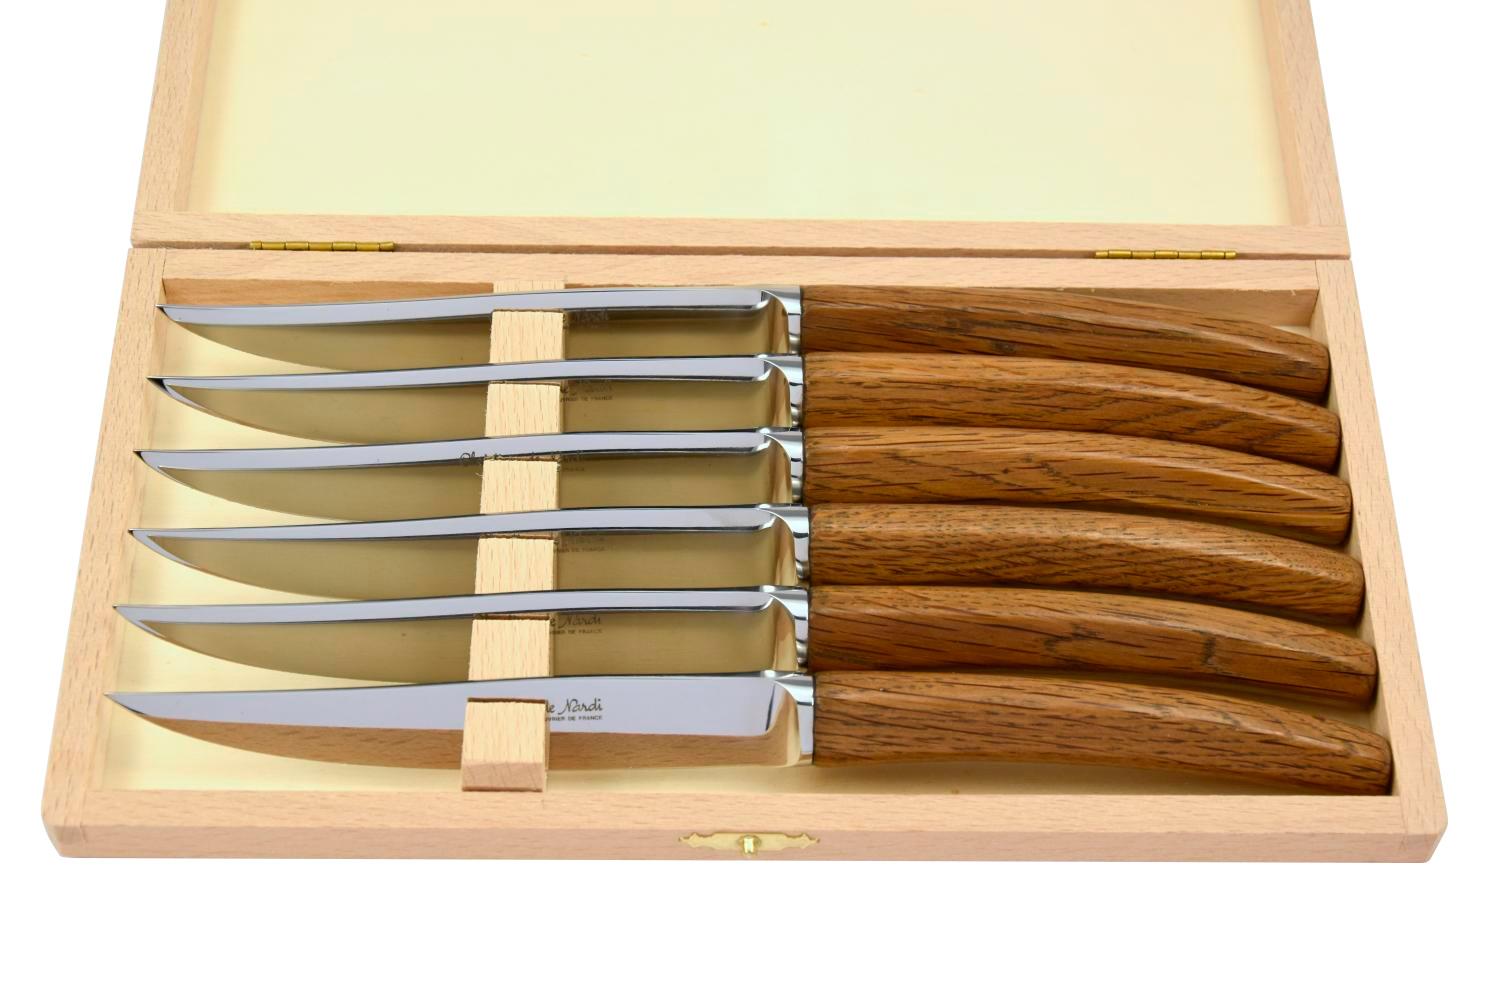 MODELE SILENE
couteau table par 6
manche bois de chêne